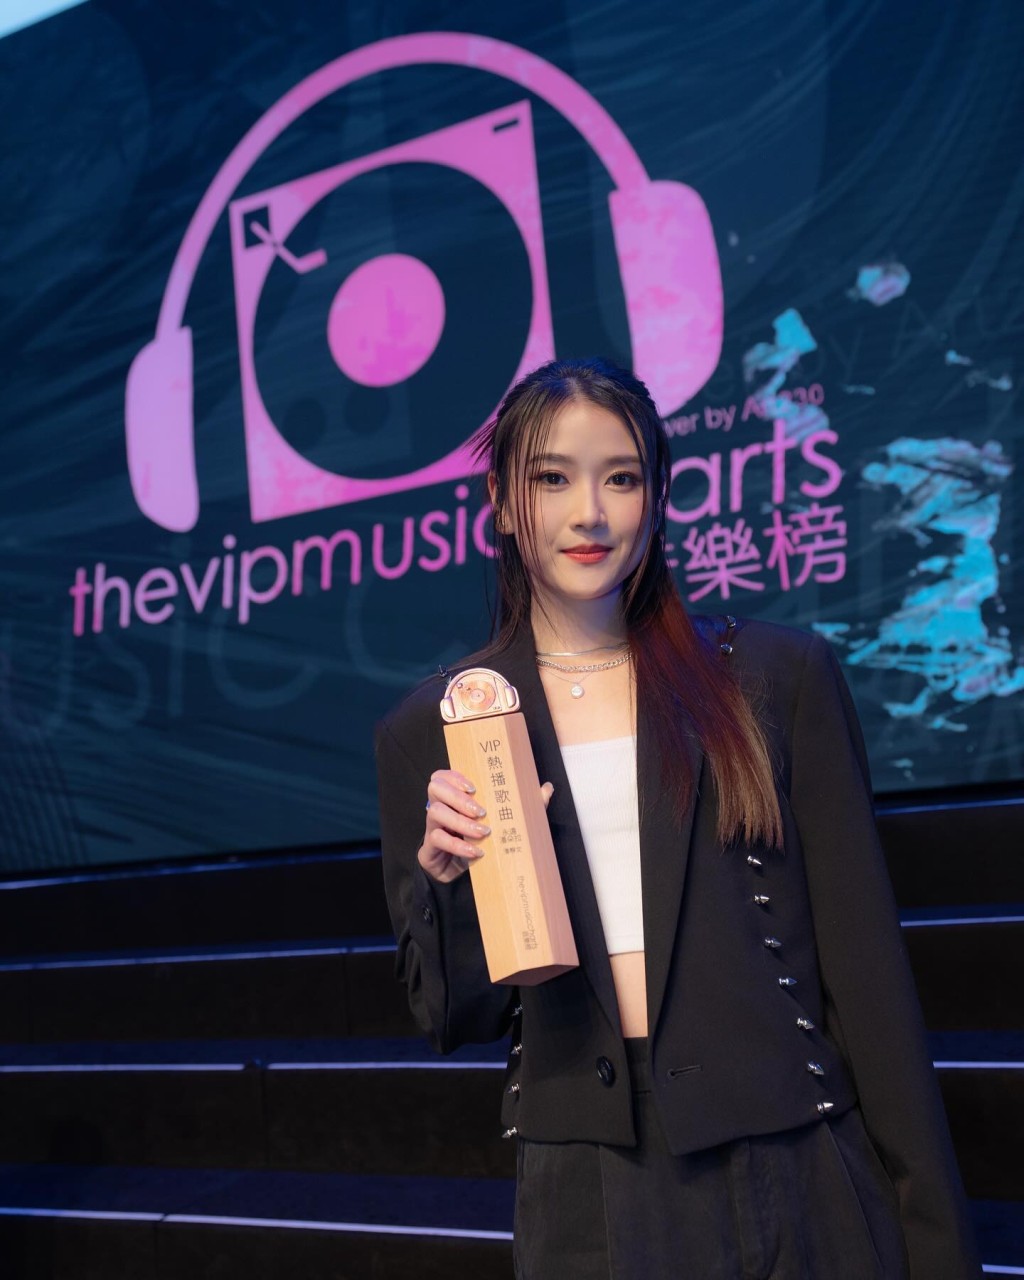 潘静文为TVB旗下艺人，也是爱爆音乐旗下歌手。